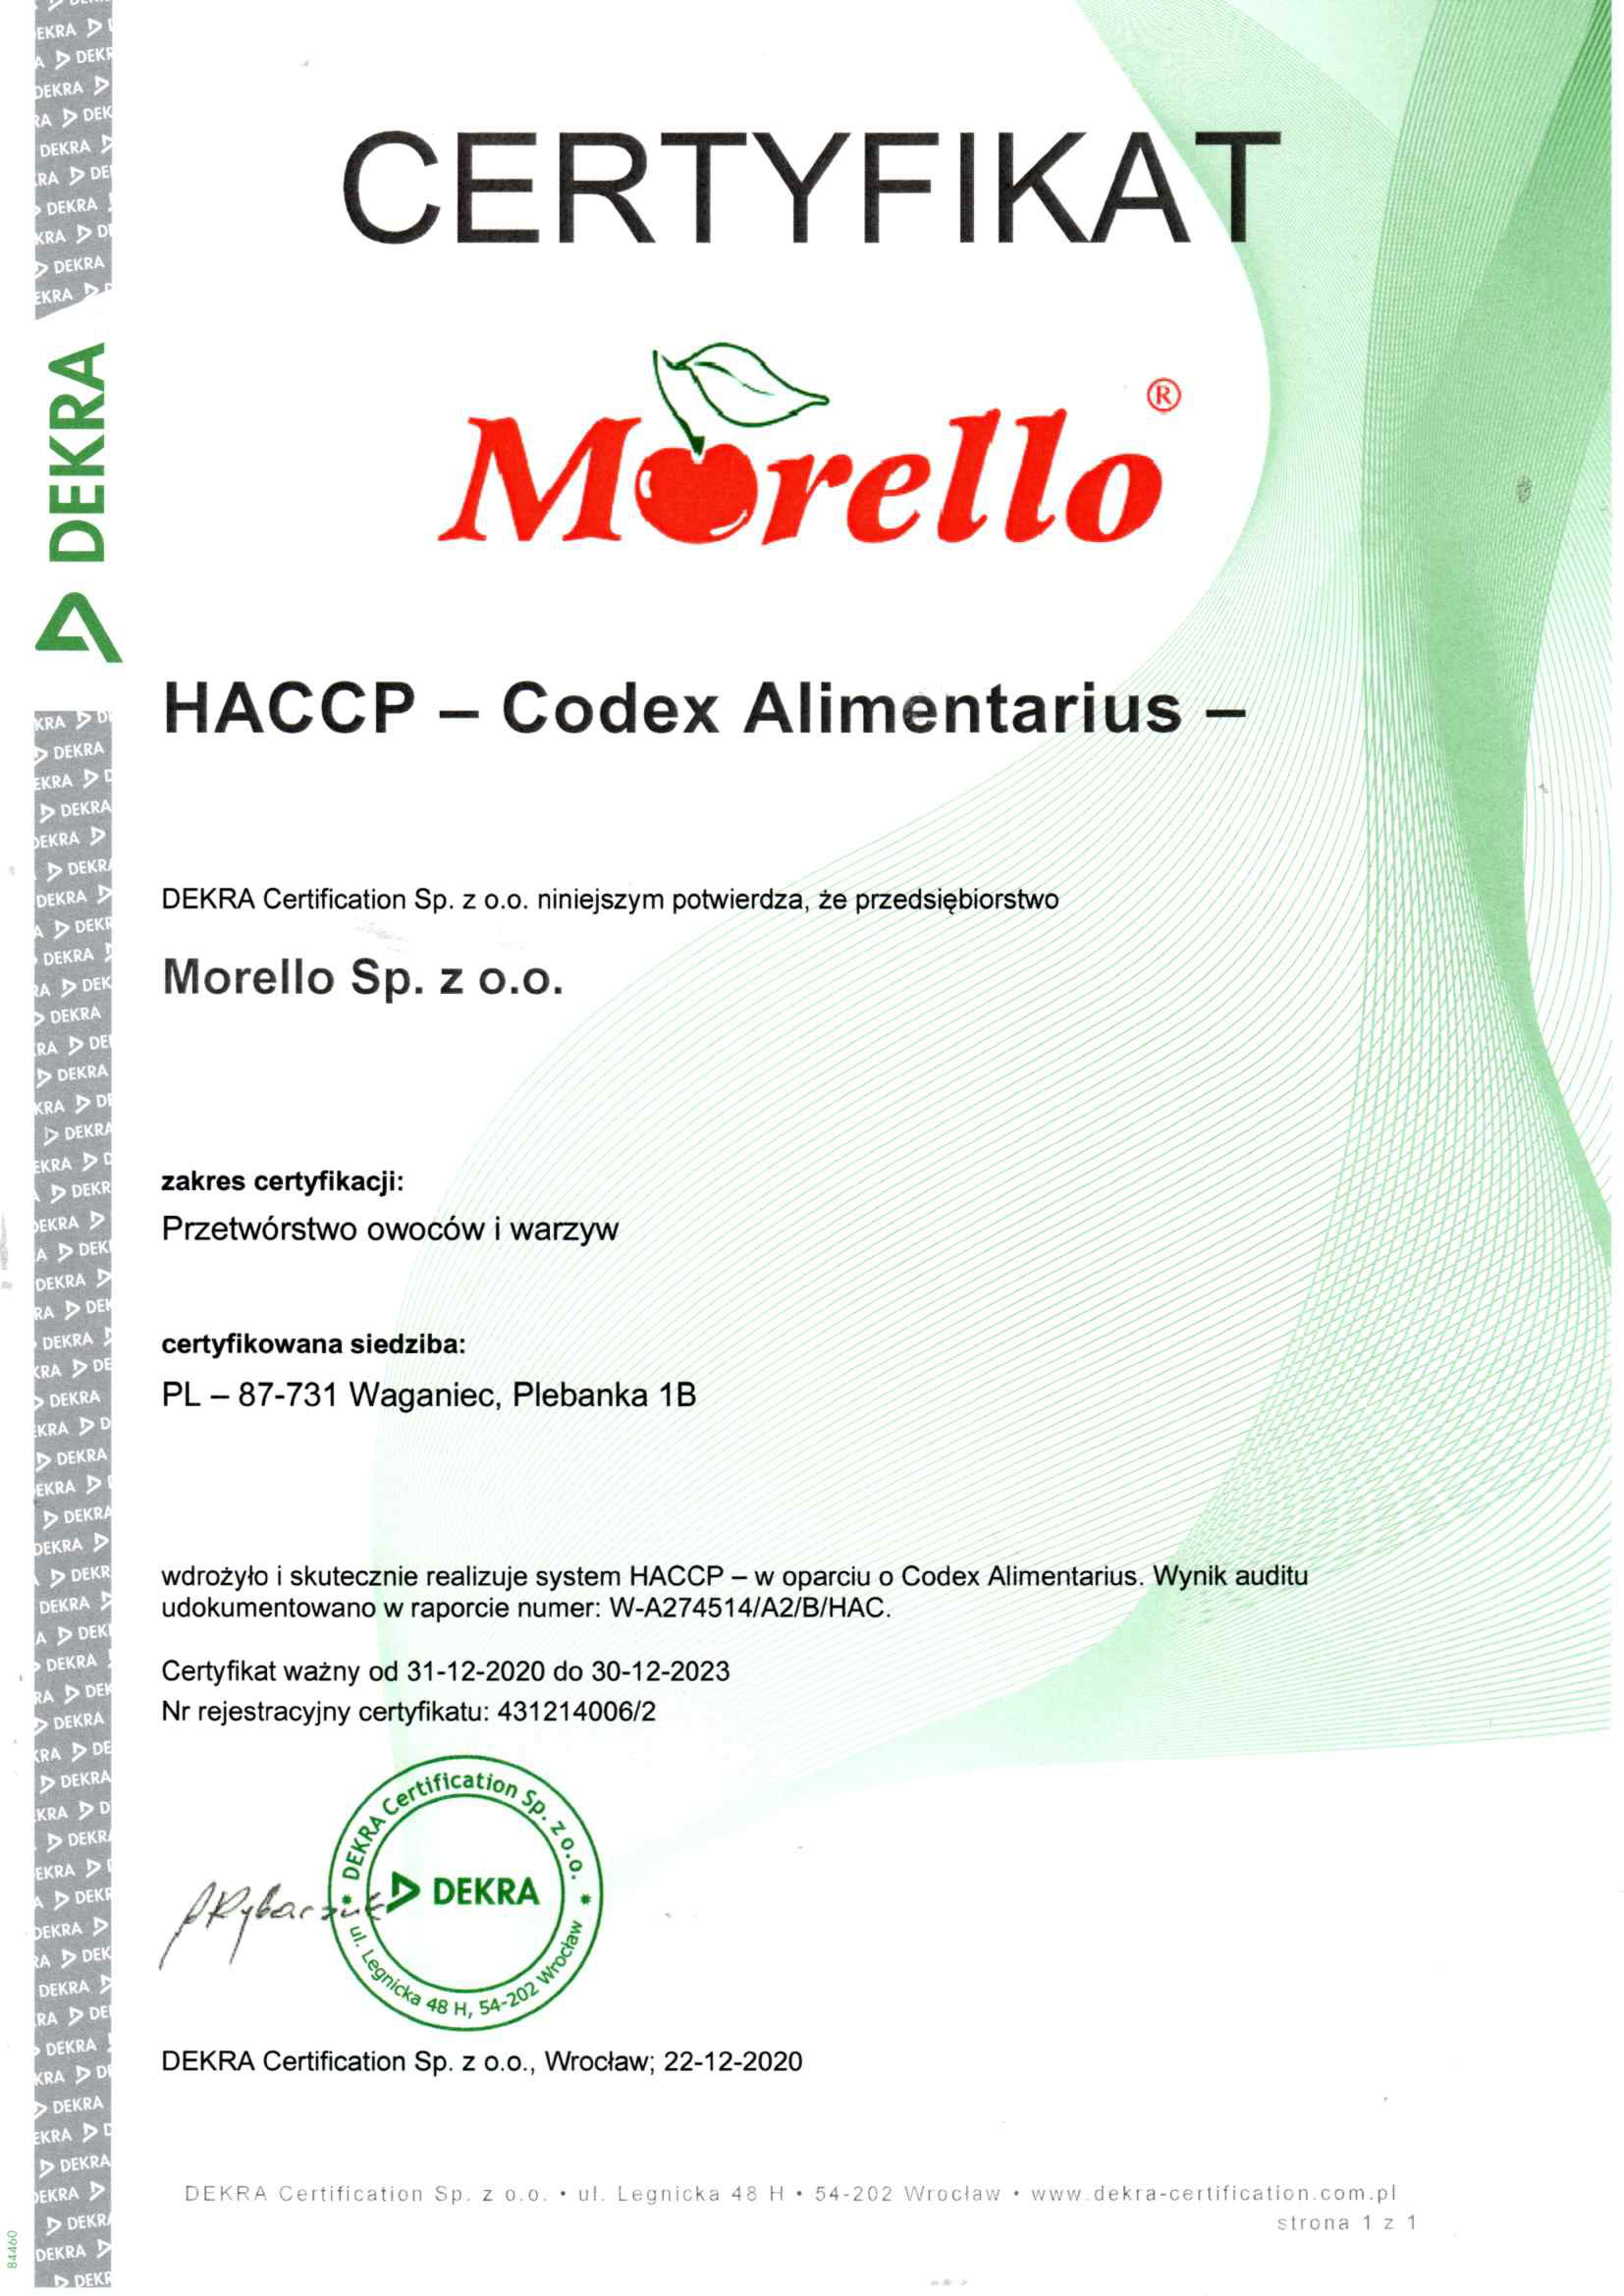 Morello - HACCP